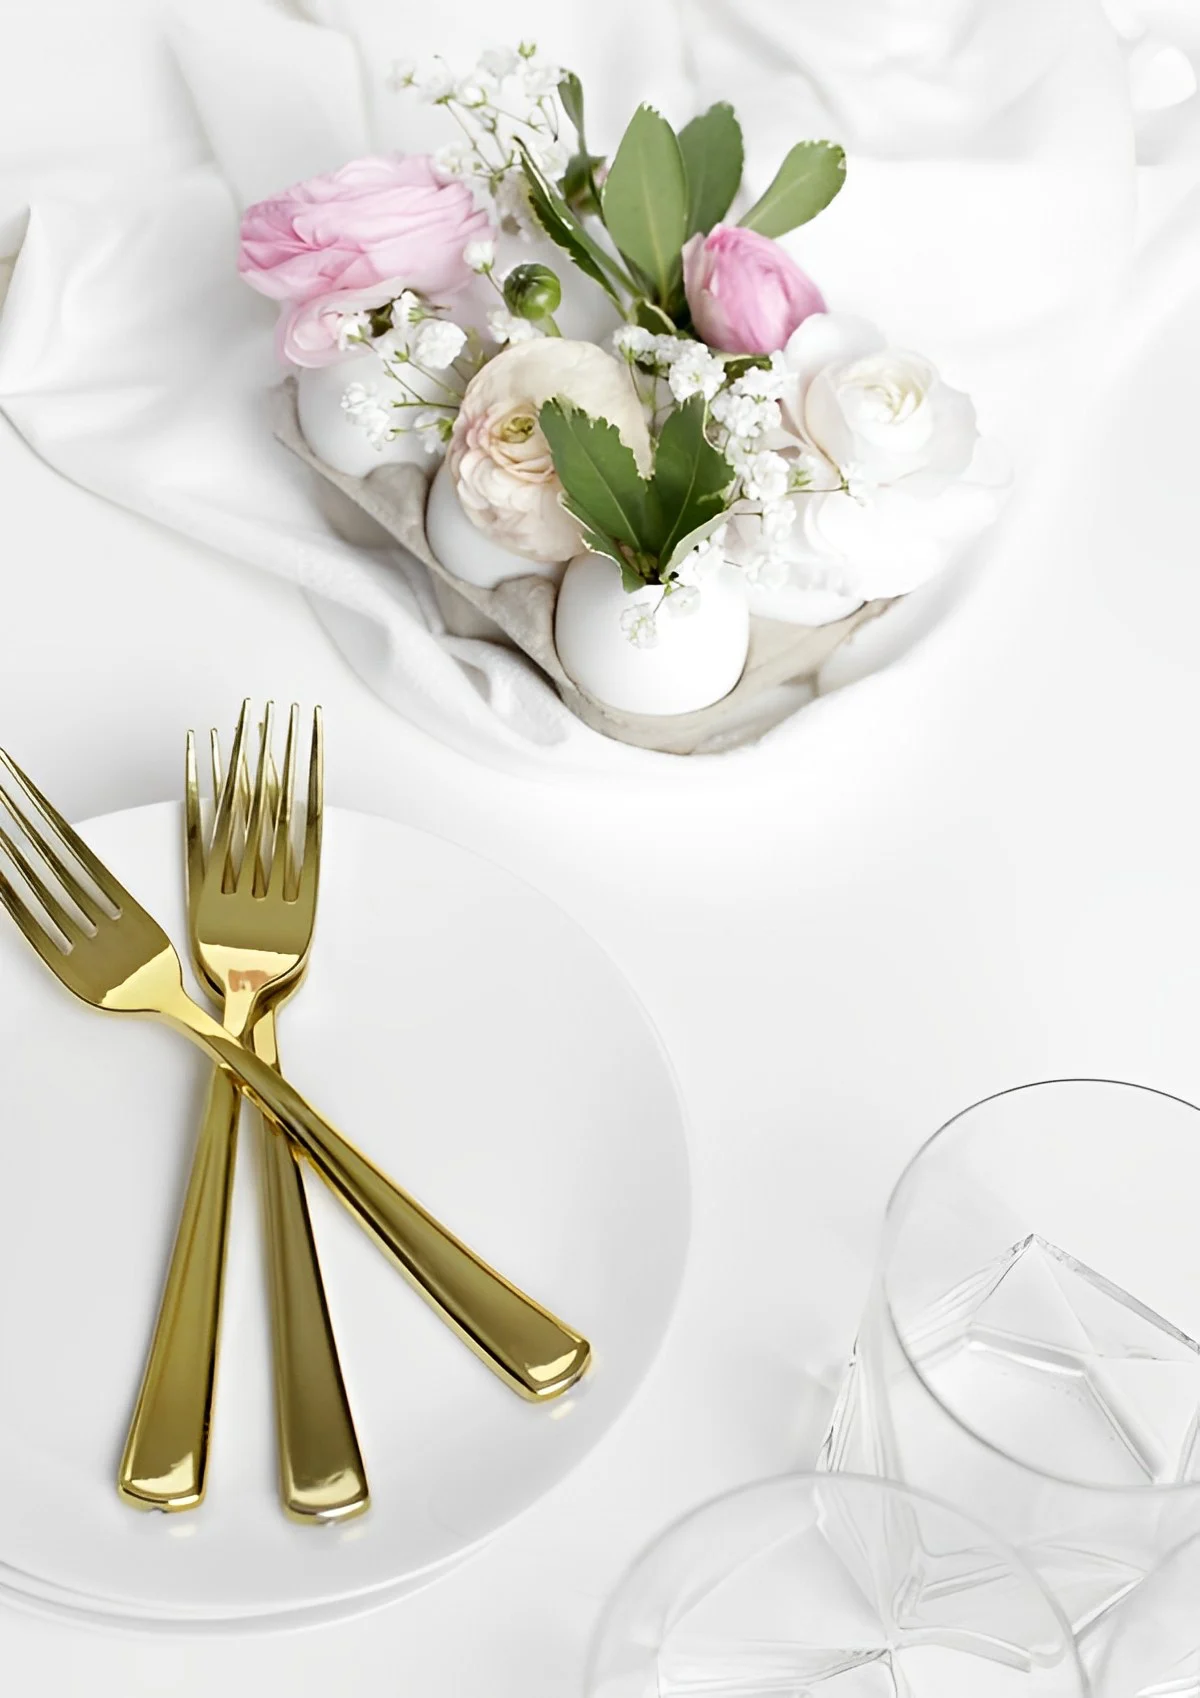 couverts de table or assiette blanche boite a oeufs fleurs verres